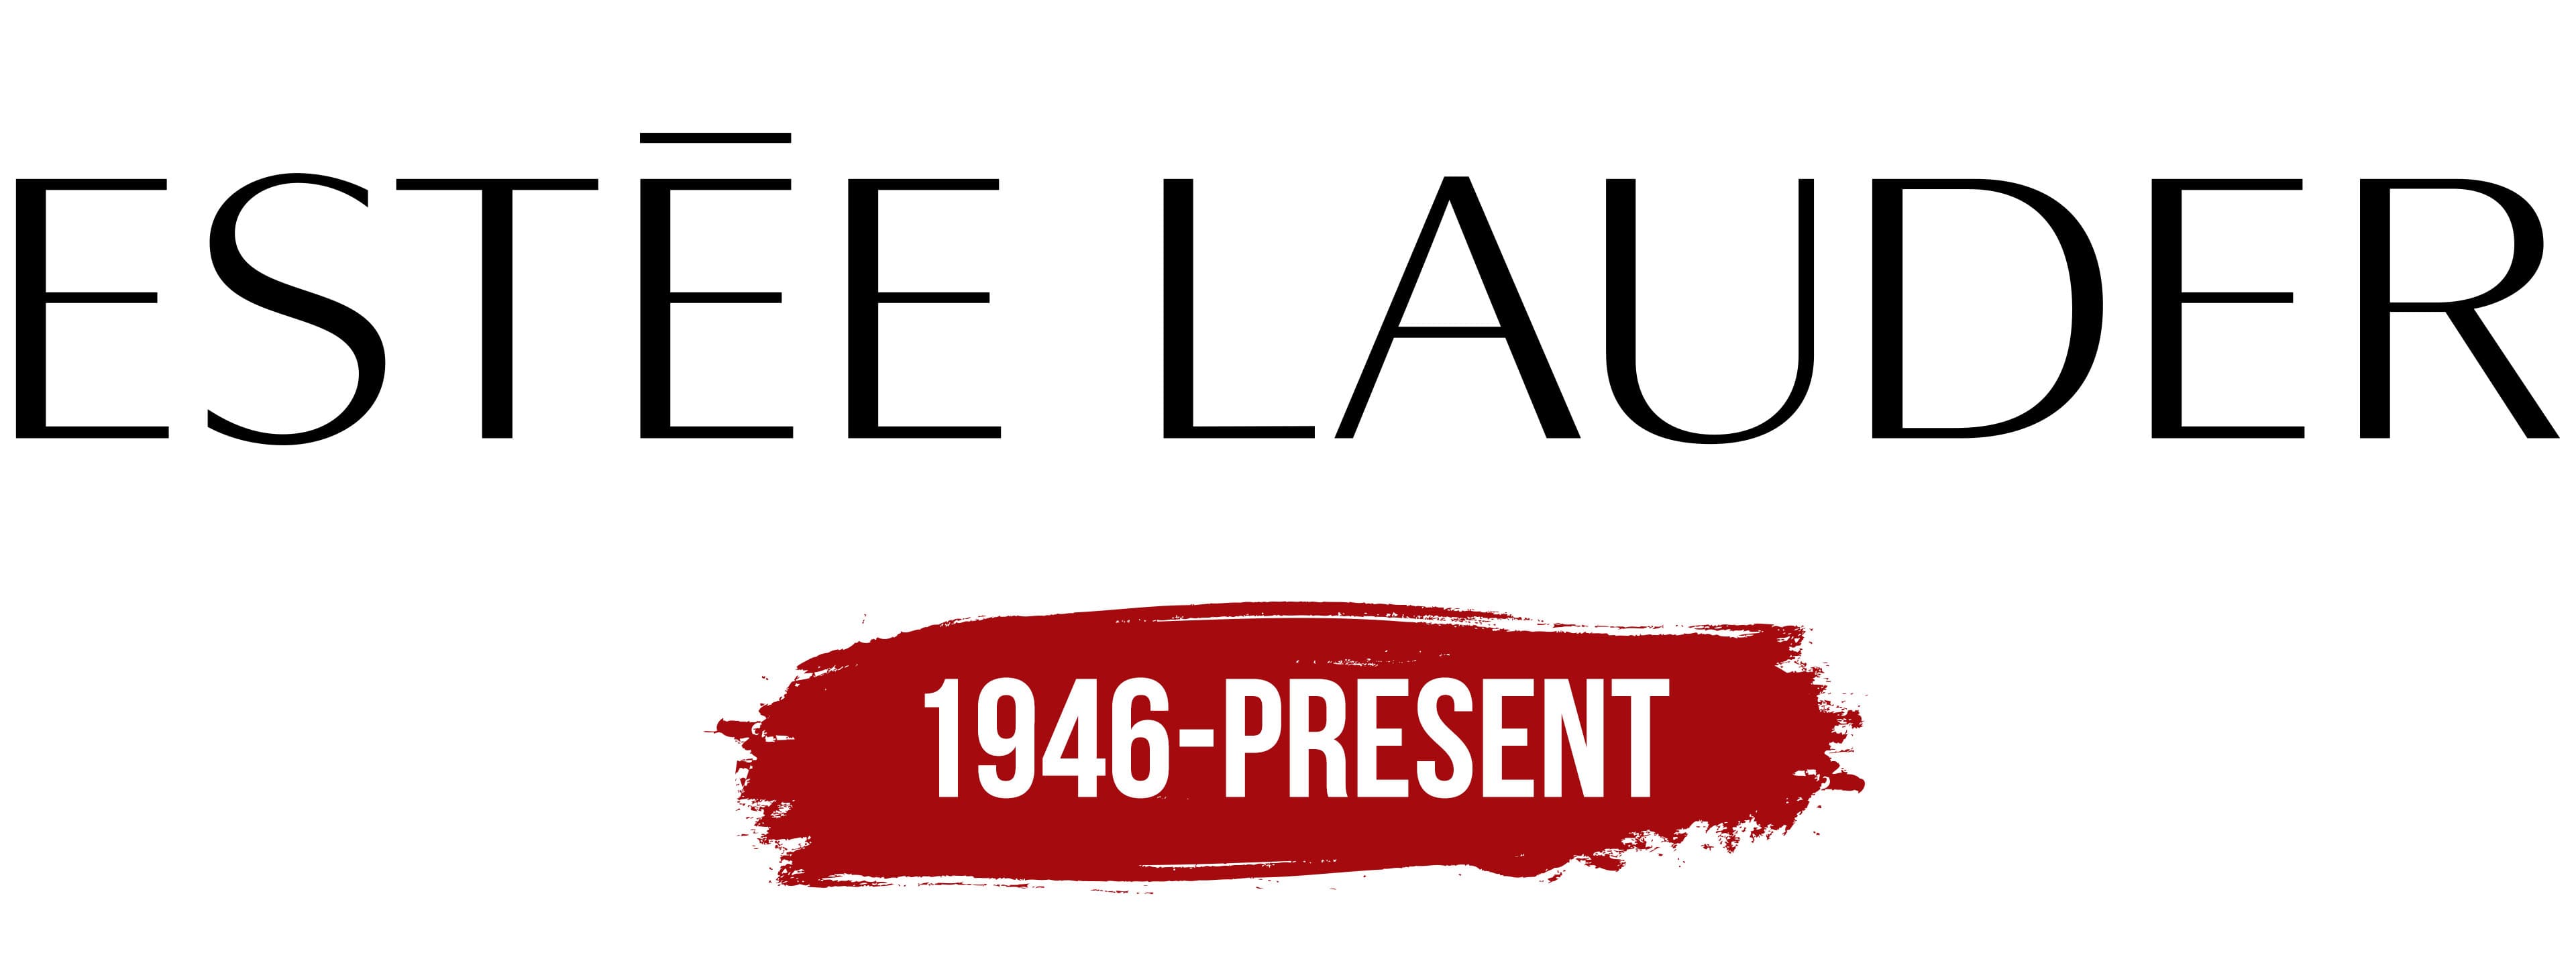 Estee Lauder Logo png images